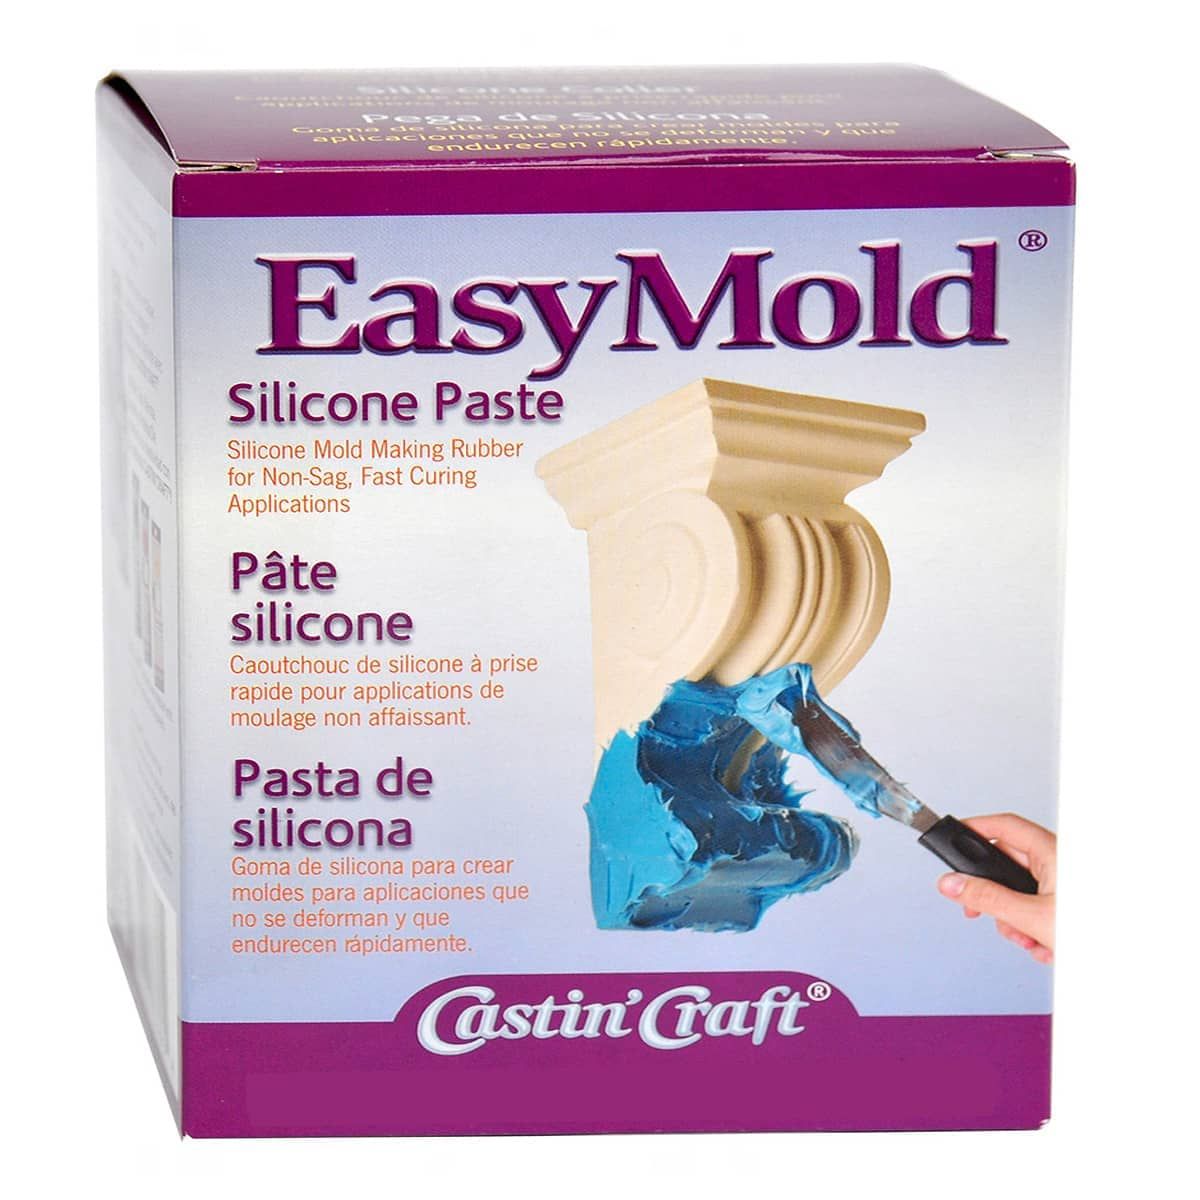 EasyMold Silicone Paste Kit, 20lb Kit (ETI)